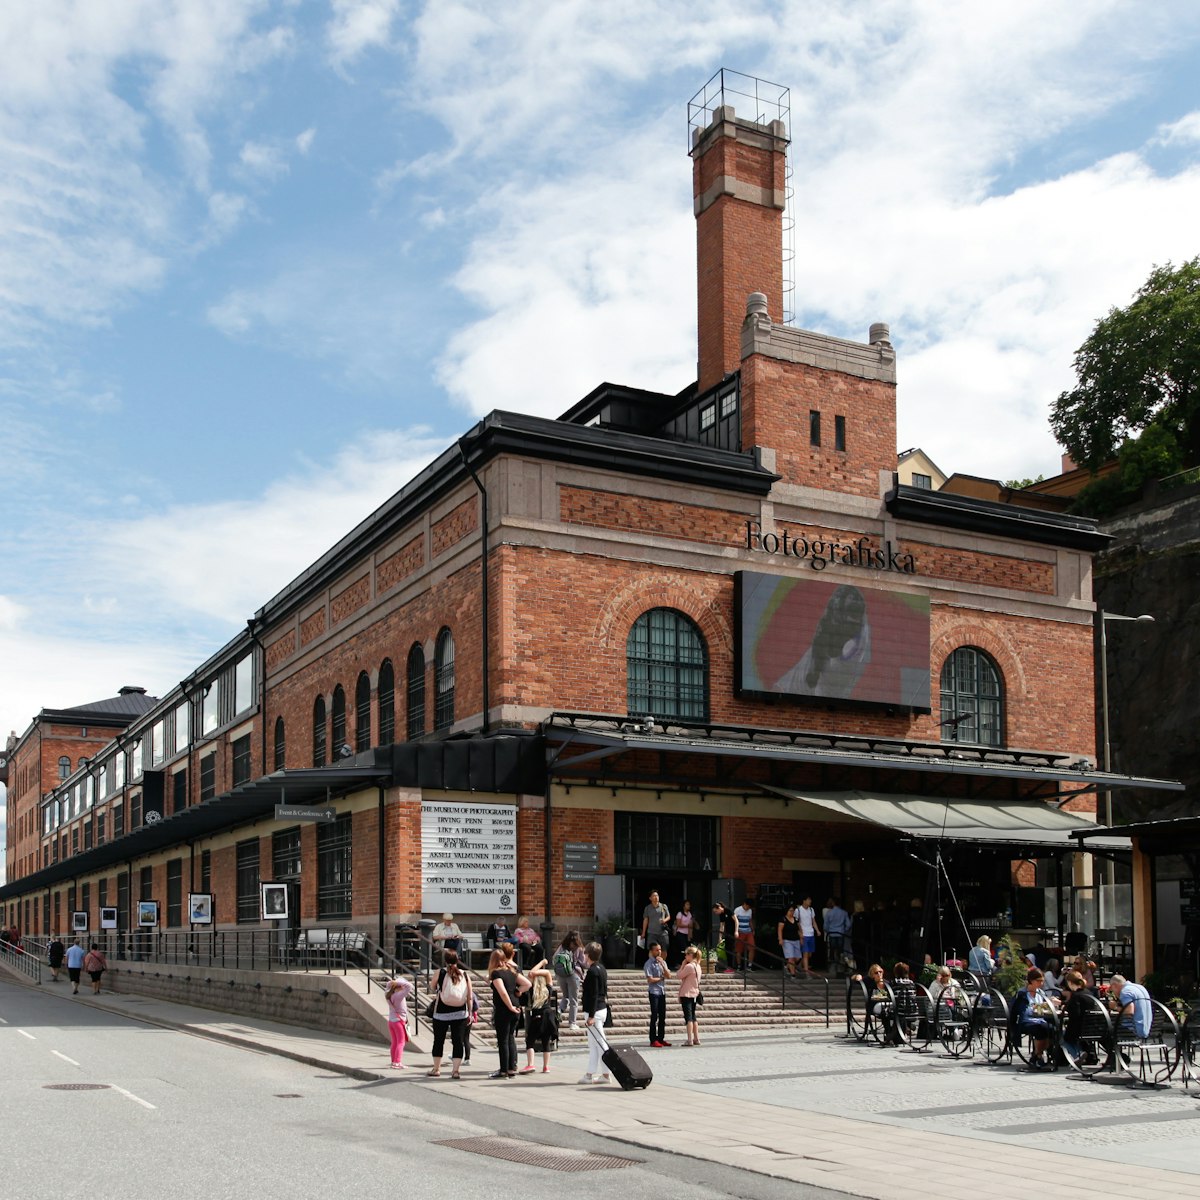 Fotografiska in Stockholm.
